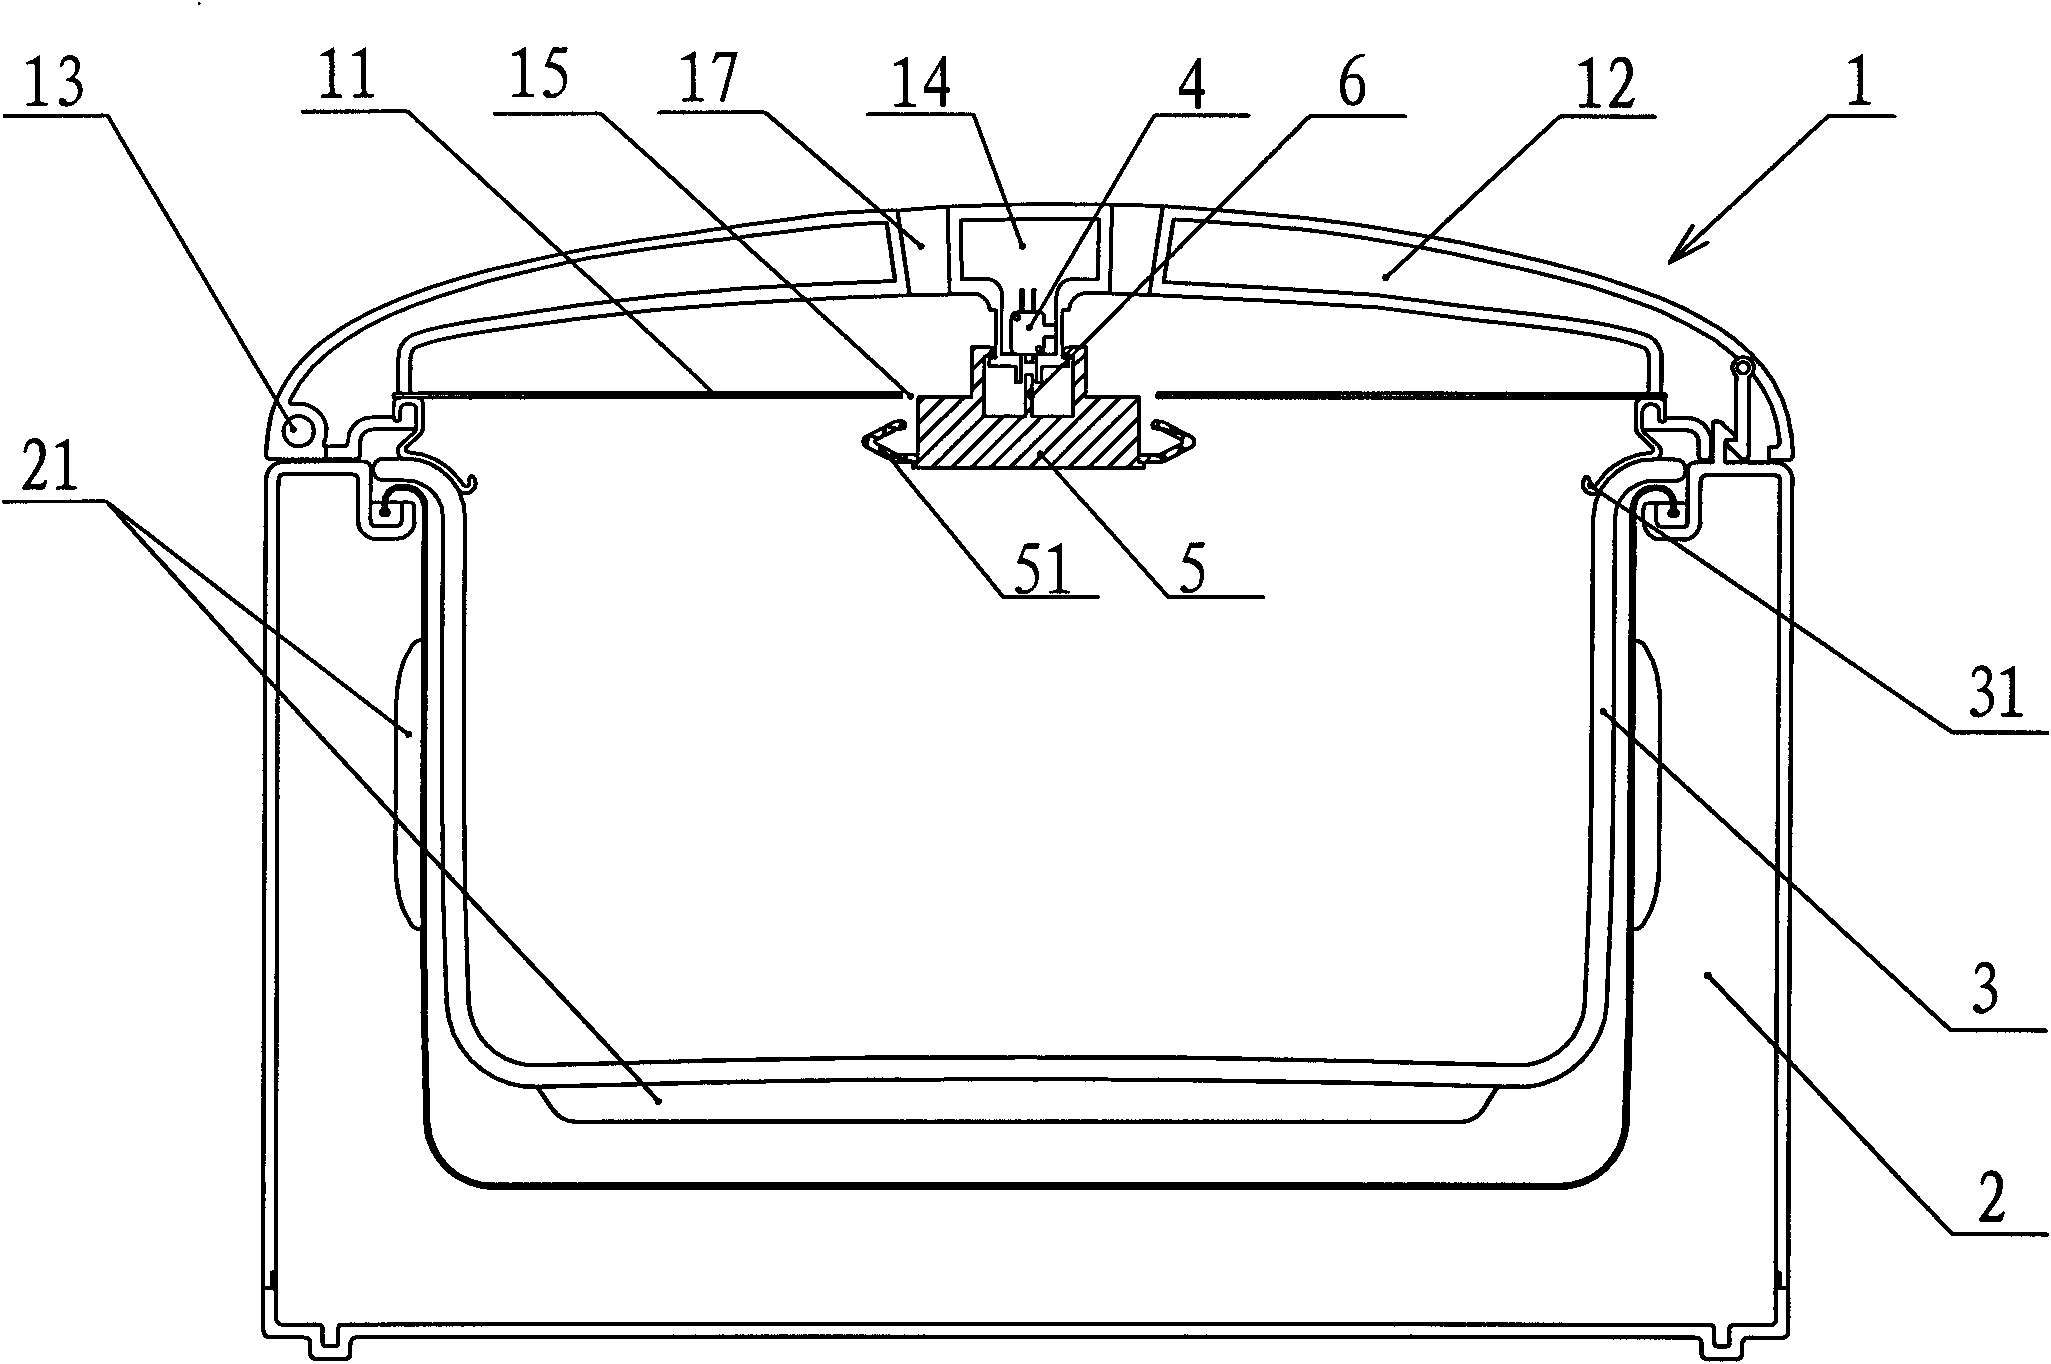 Micro-pressure cooker